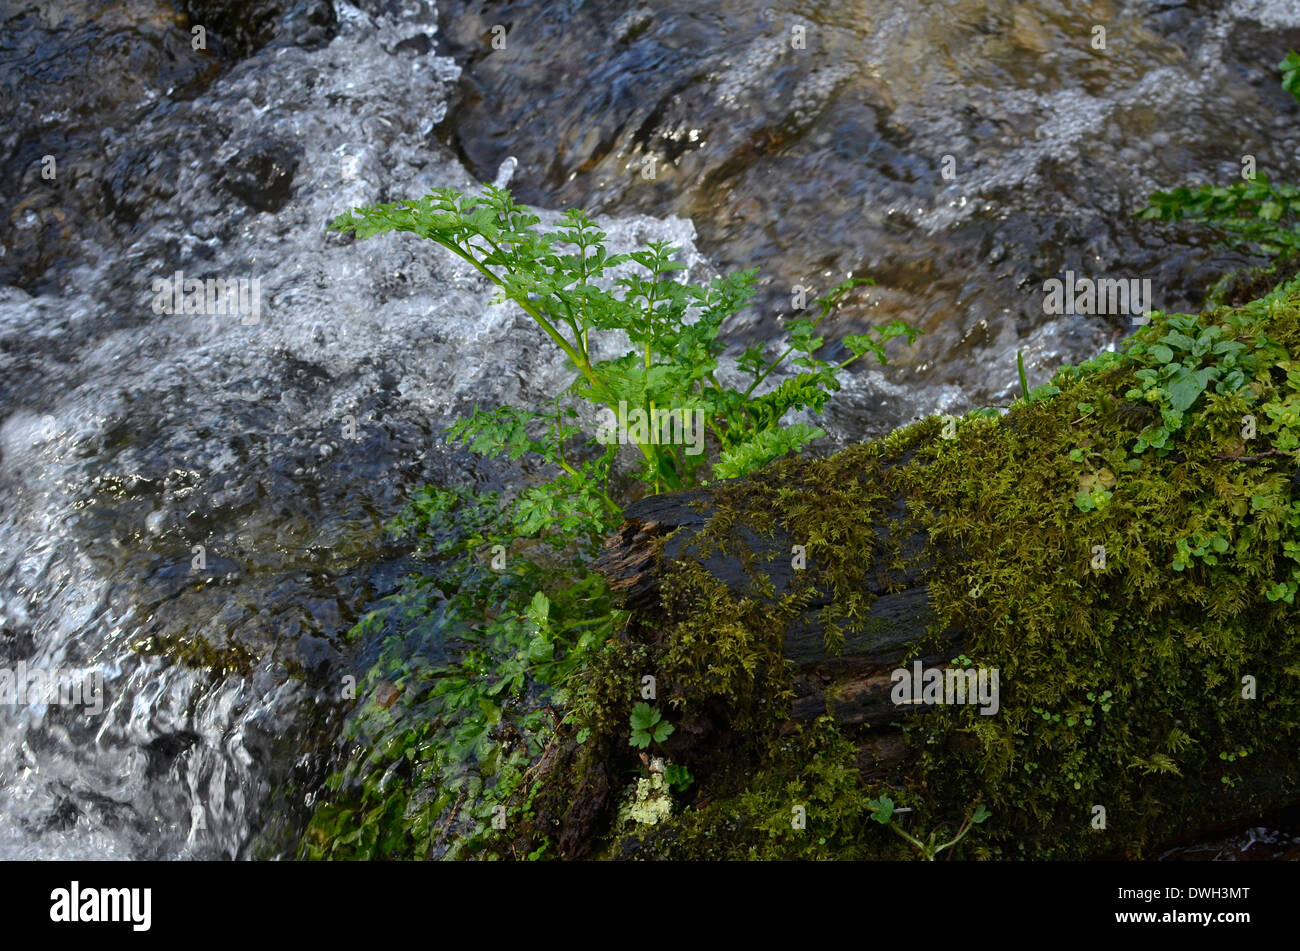 Hemlock Water Dropwort / Oenanthe crocata midstream. One of UK's most poisonous plants. Stock Photo